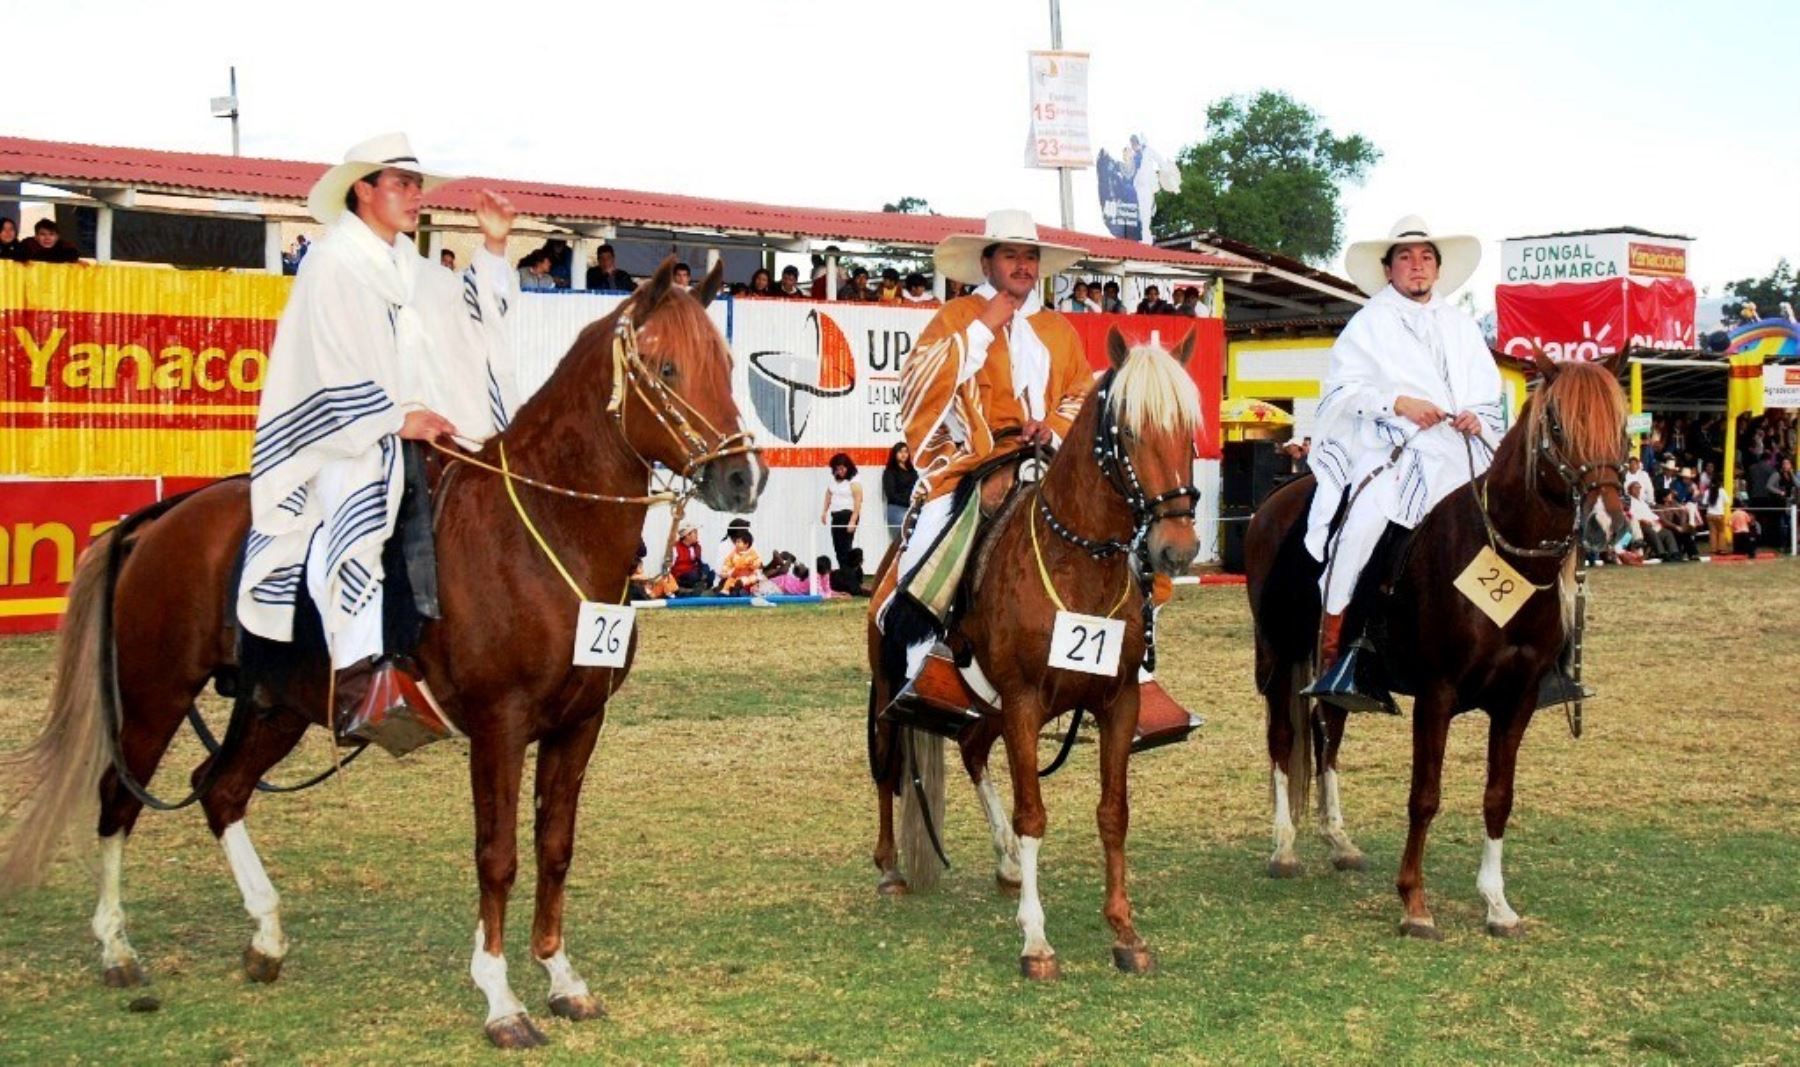 En la Feria Fongal de Cajamarca habrá una exhibición de caballos de paso peruano. ANDINA/Eduard Lozano